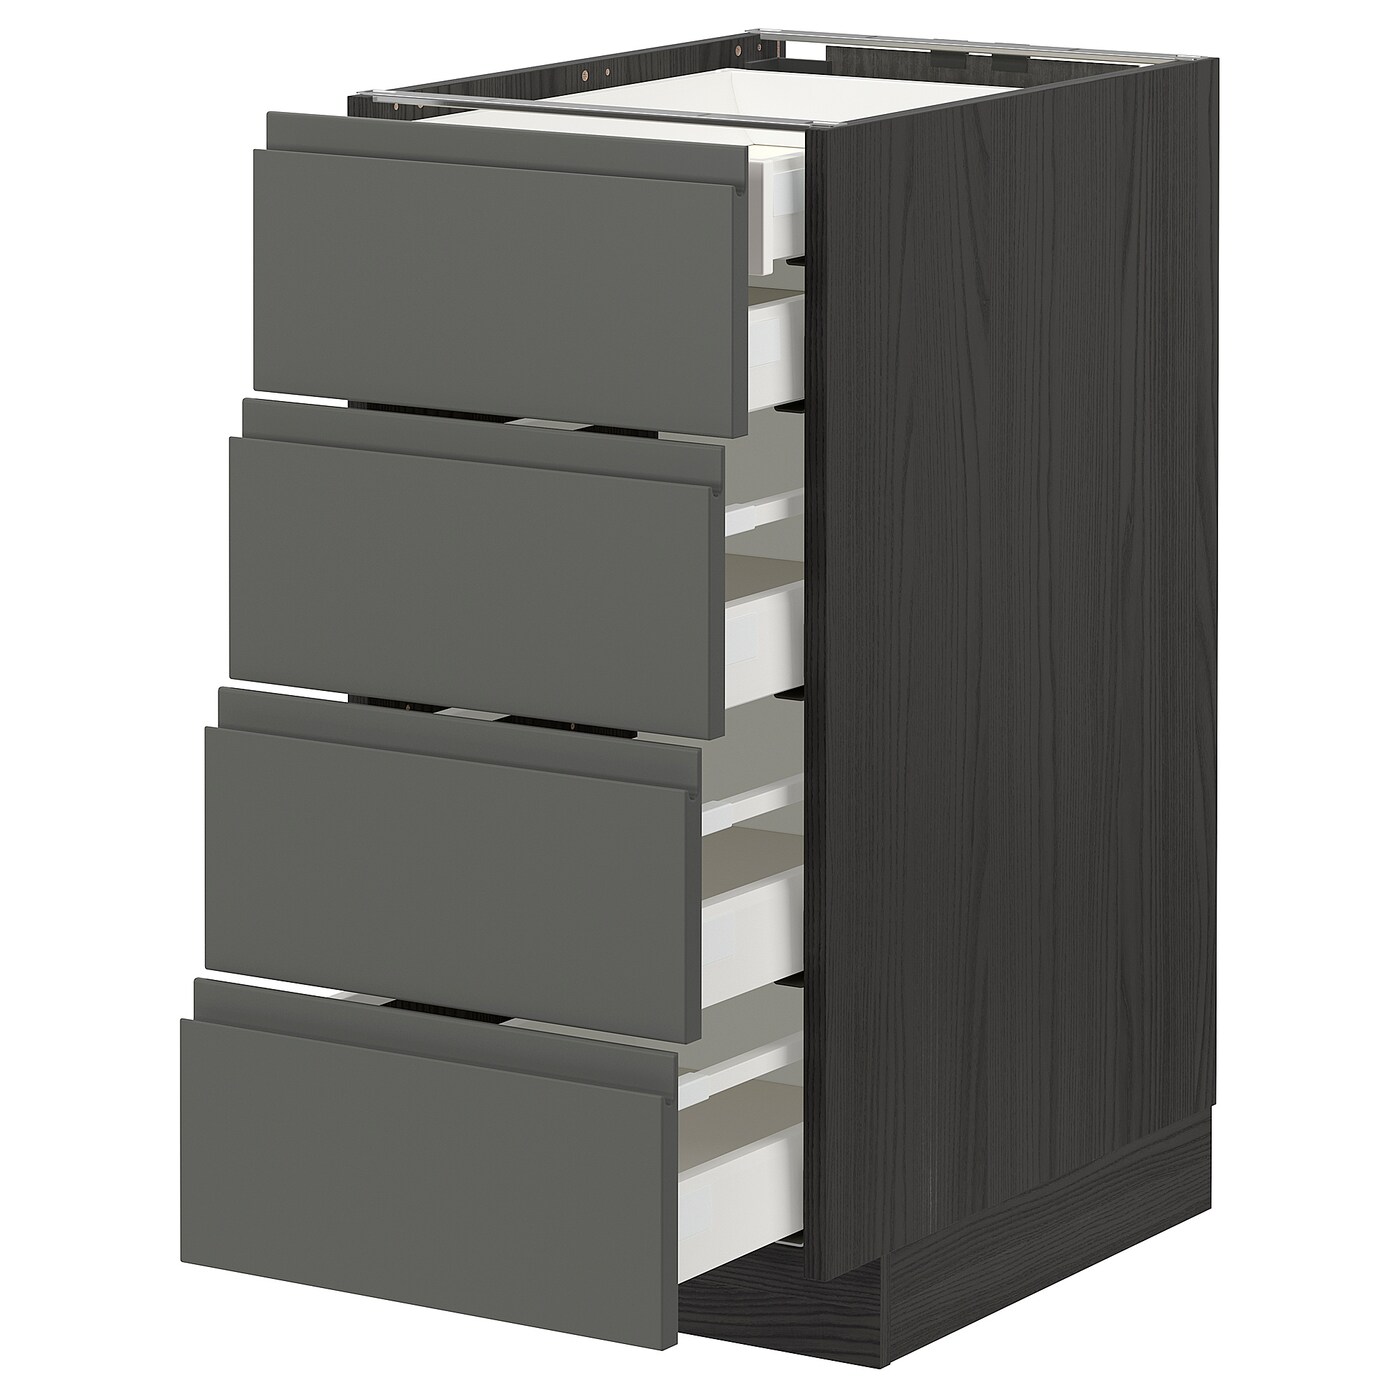 Напольный кухонный шкаф  - IKEA METOD MAXIMERA, 88x62,1x40см, черный/серый, МЕТОД МАКСИМЕРА ИКЕА